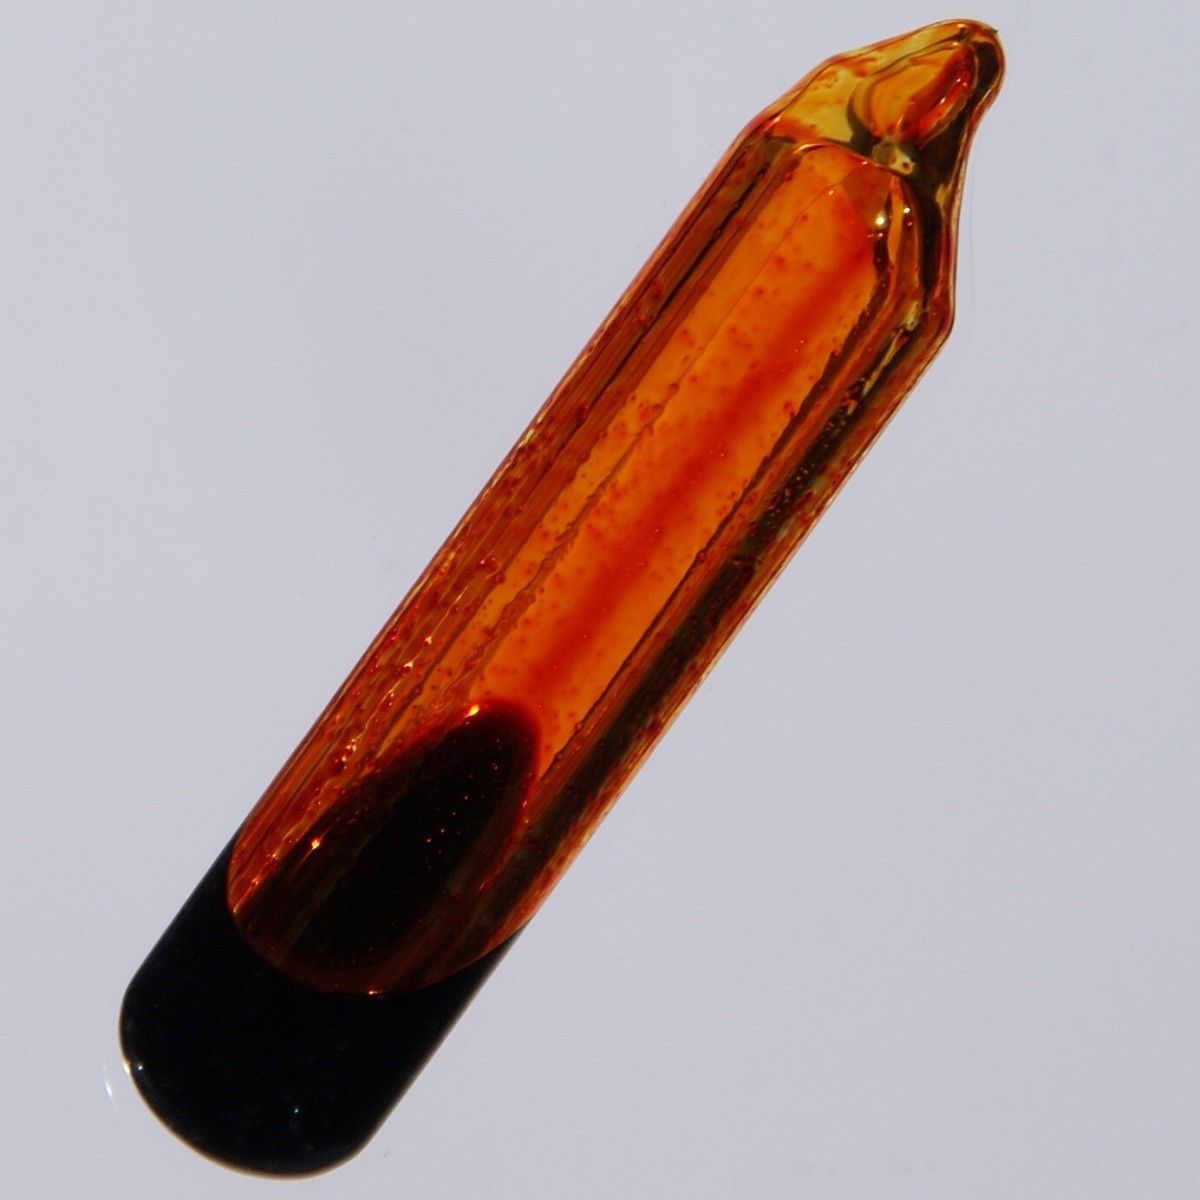 Bromine (element 35) is a dark red liquid at room temperature.